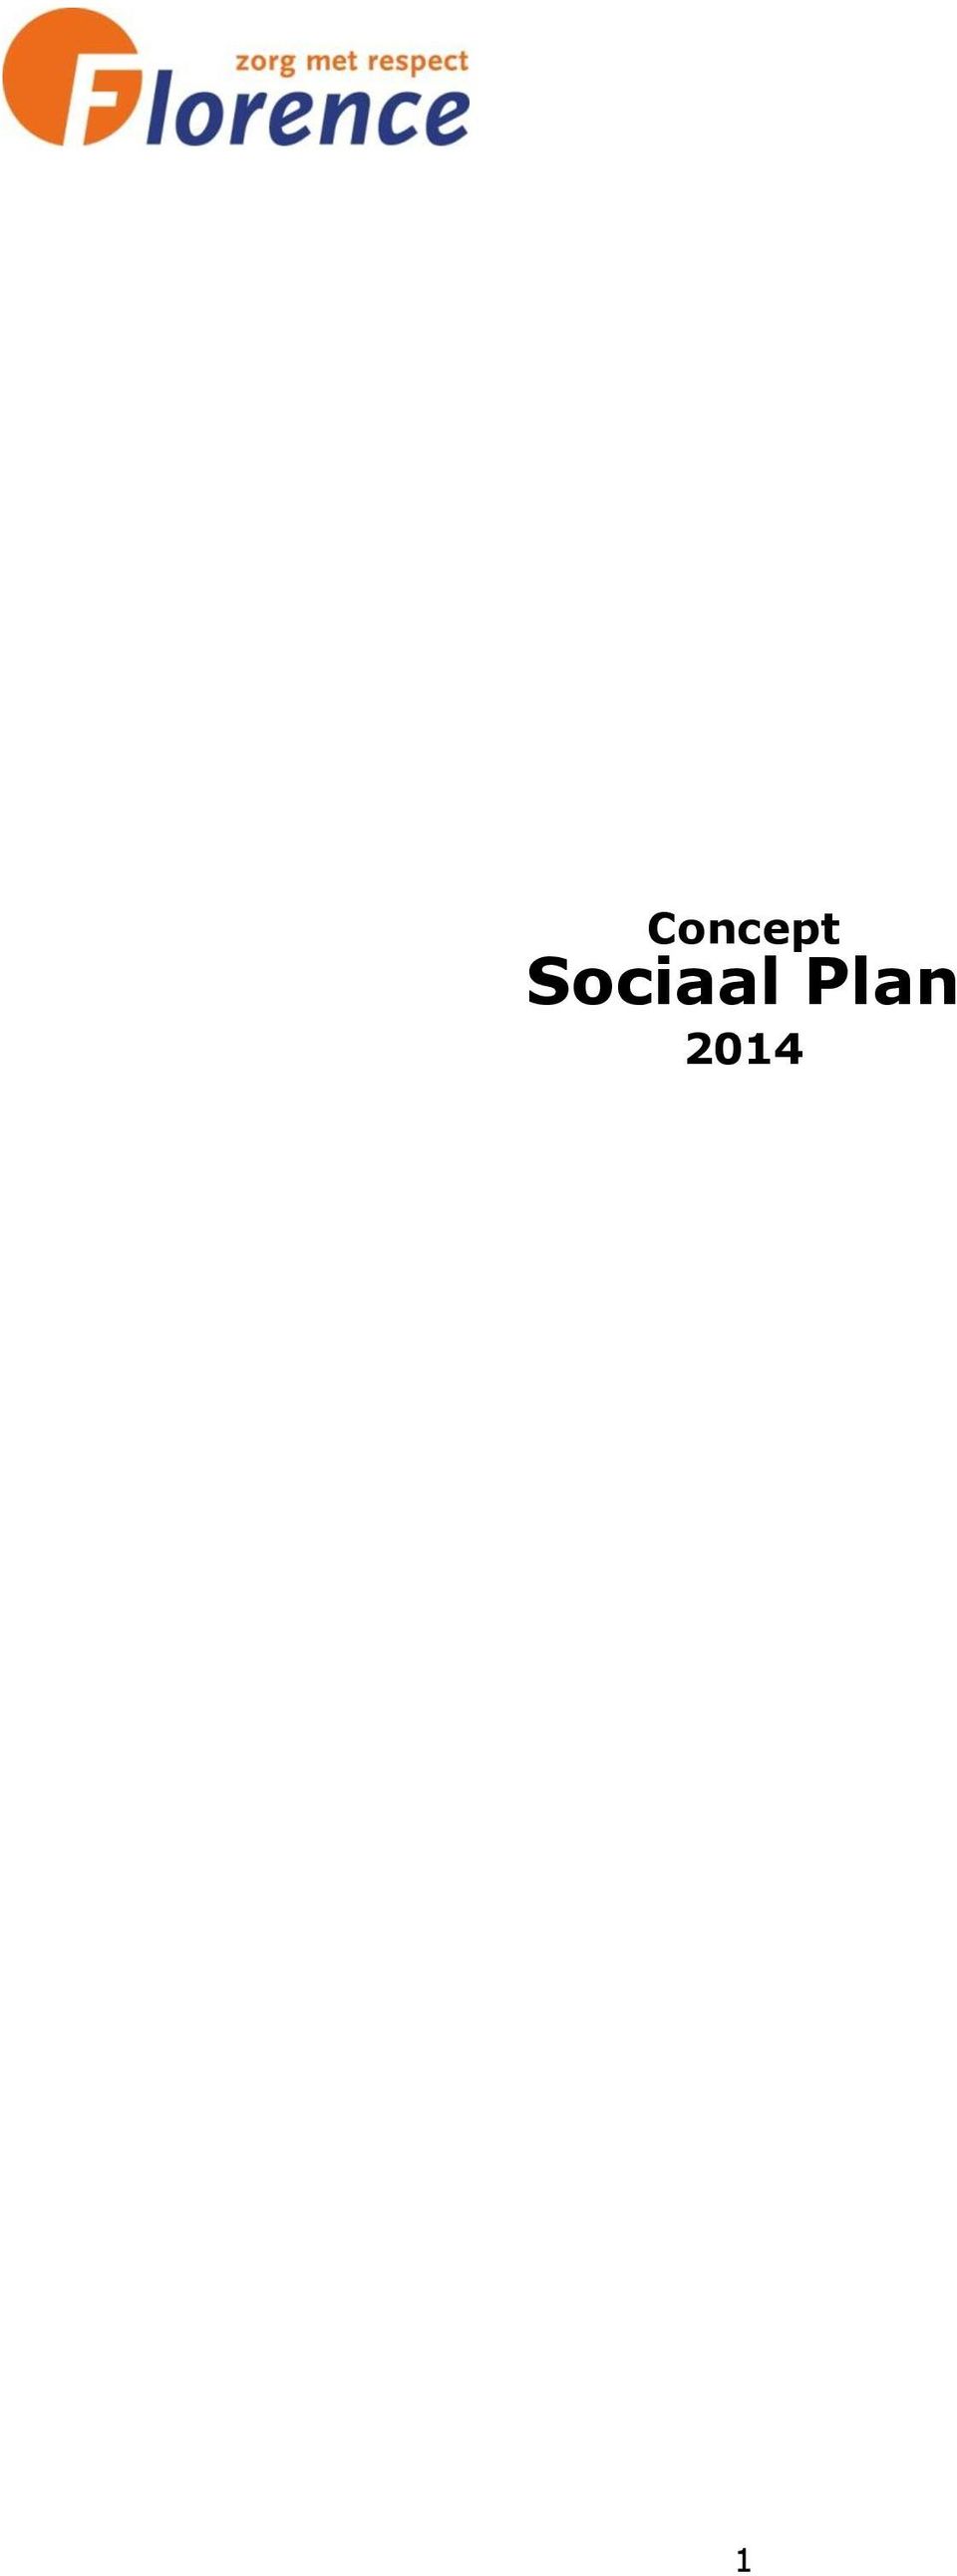 Plan 2014